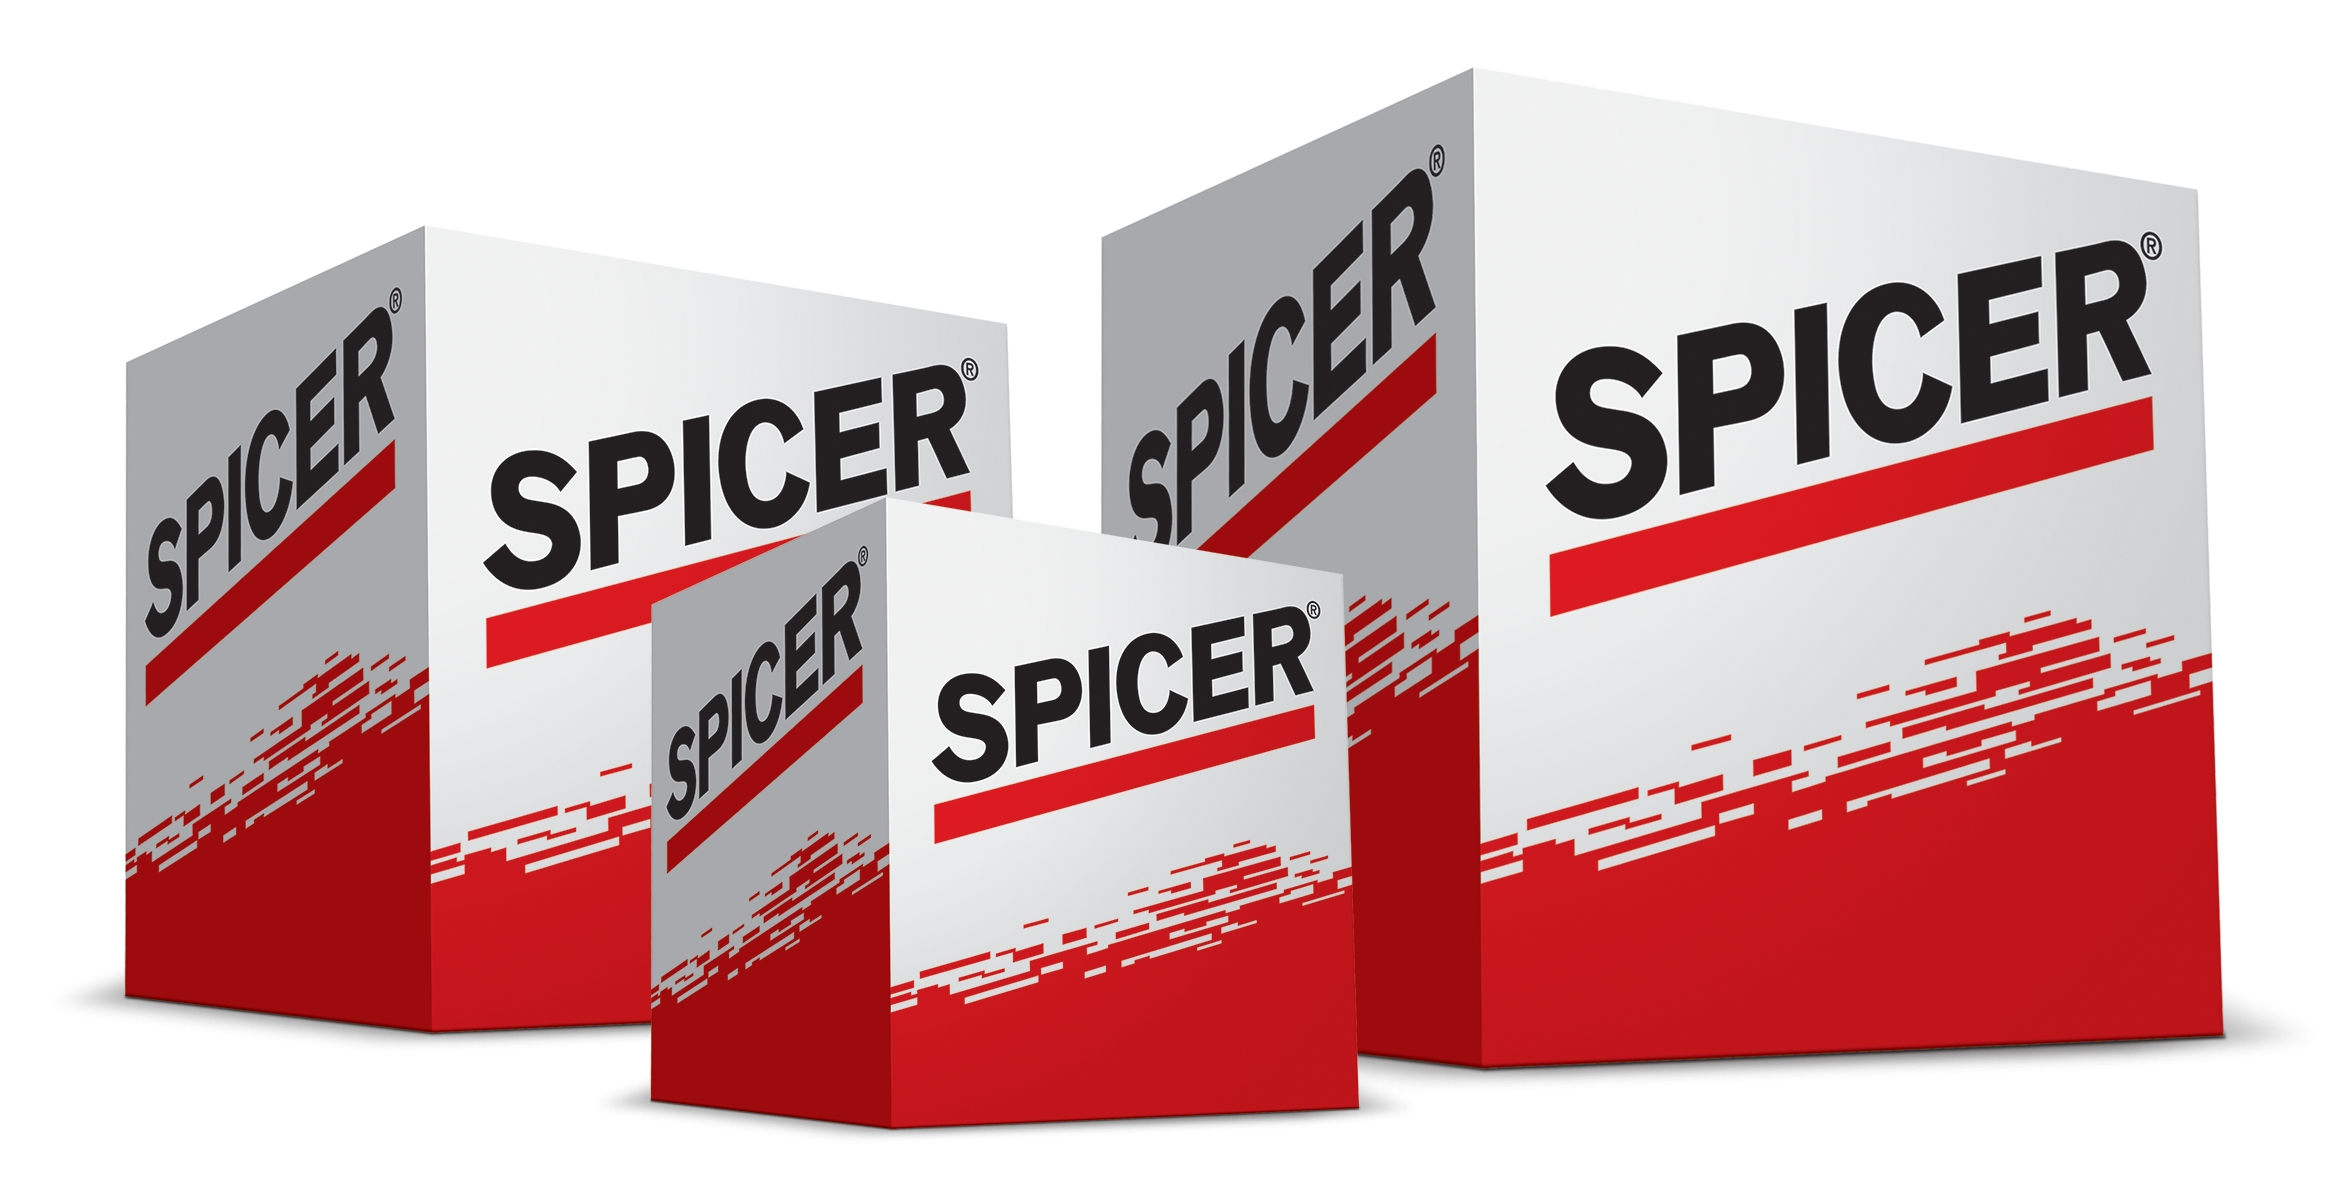 Dana oferece componentes de reposição Spicer para caminhões